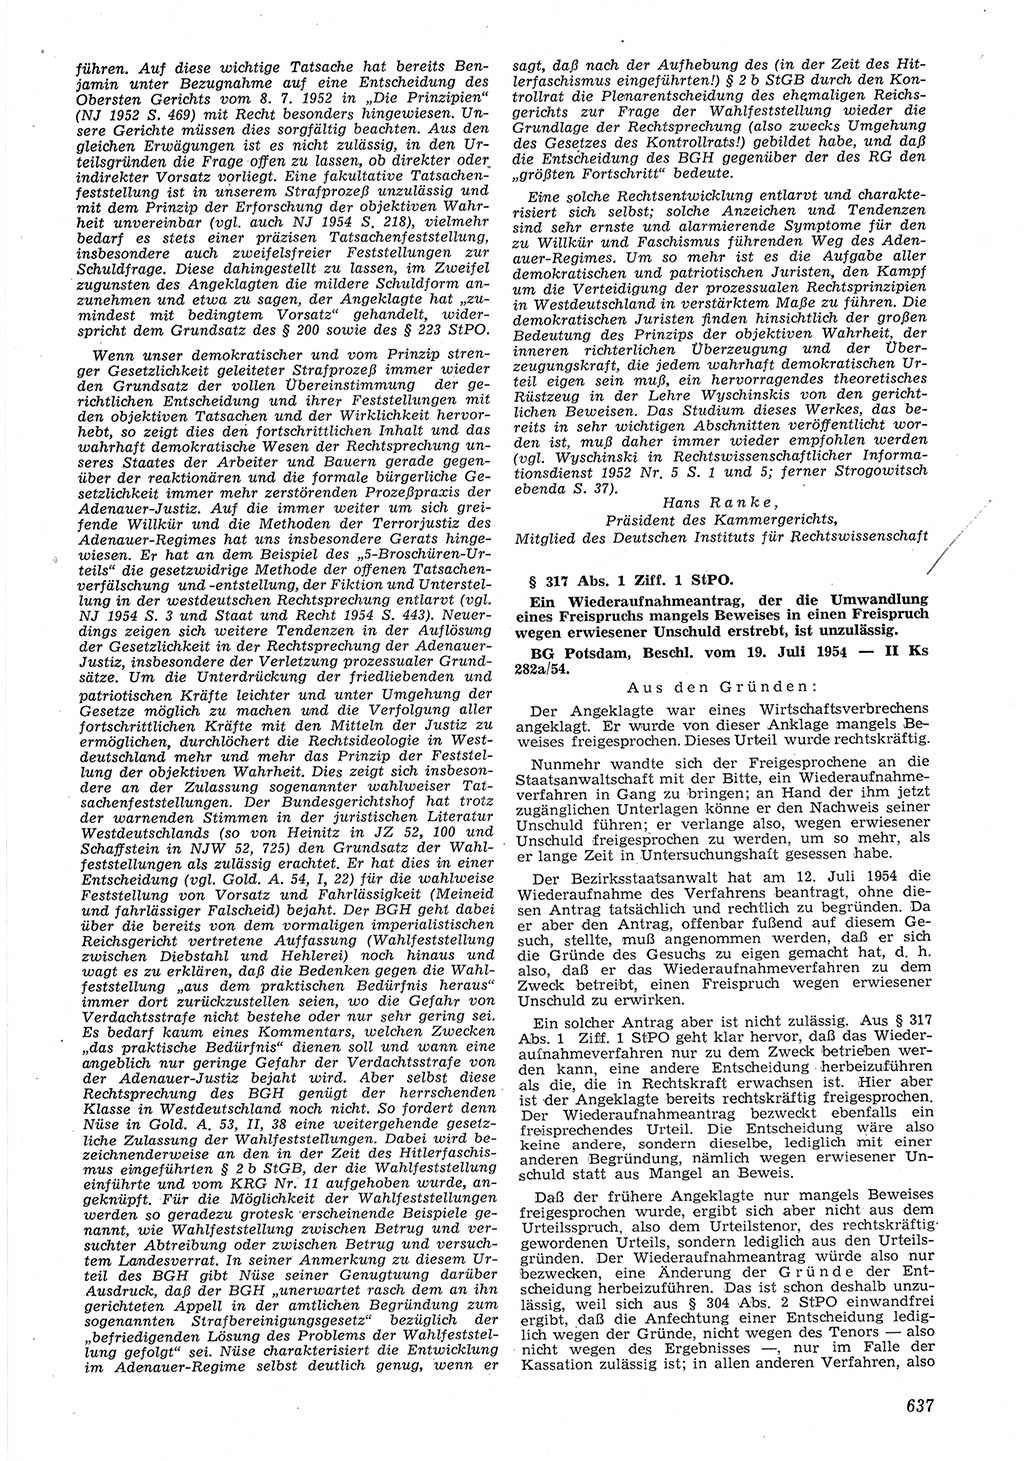 Neue Justiz (NJ), Zeitschrift für Recht und Rechtswissenschaft [Deutsche Demokratische Republik (DDR)], 8. Jahrgang 1954, Seite 637 (NJ DDR 1954, S. 637)